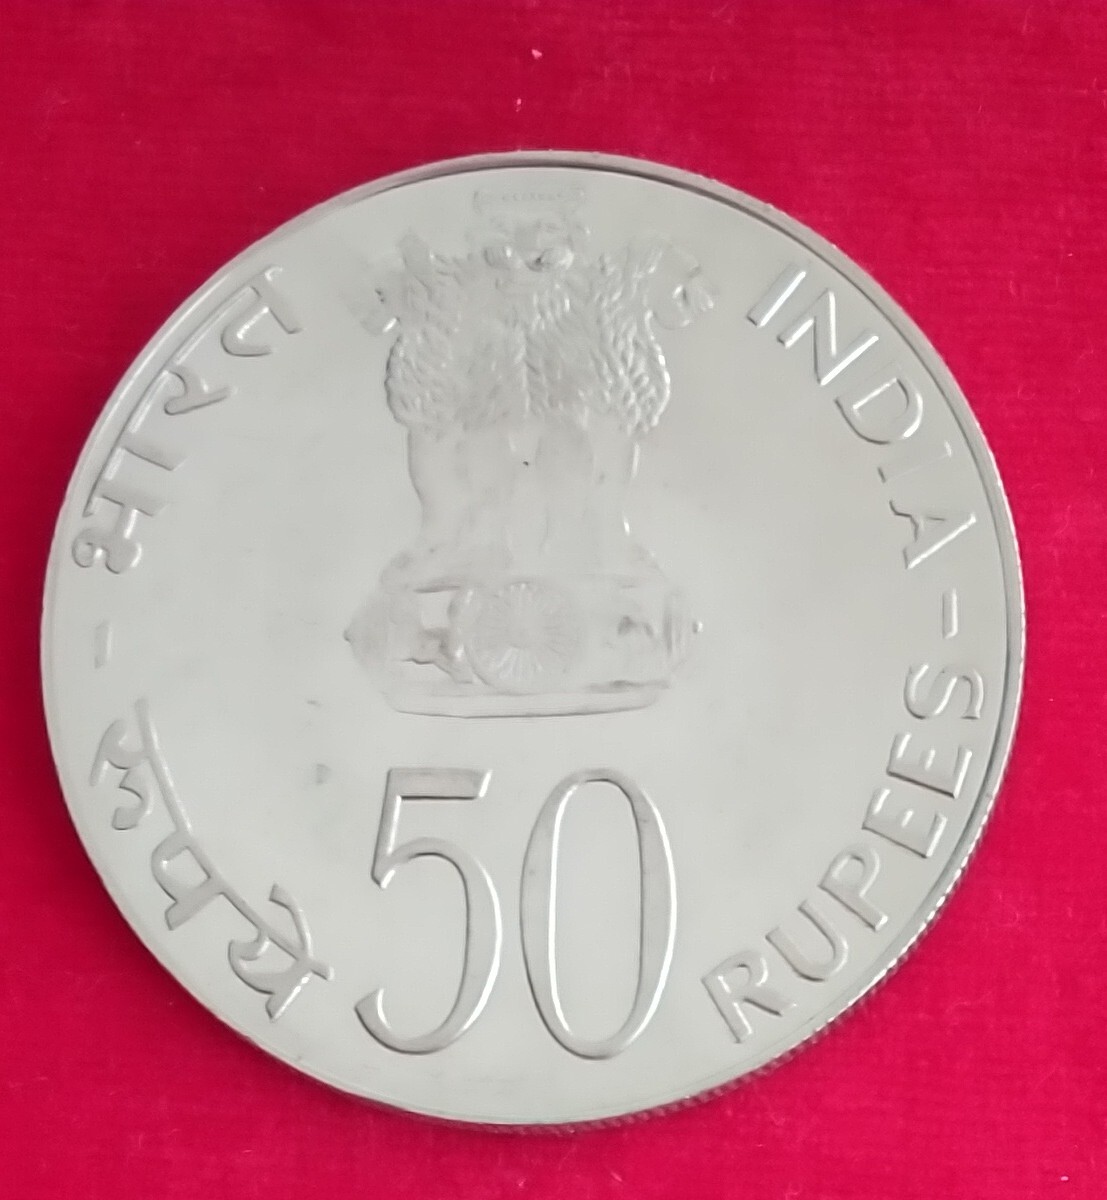 インドの銀貨3種 (品位 銀500)重量86.5g FAOの記念貨幣の画像3